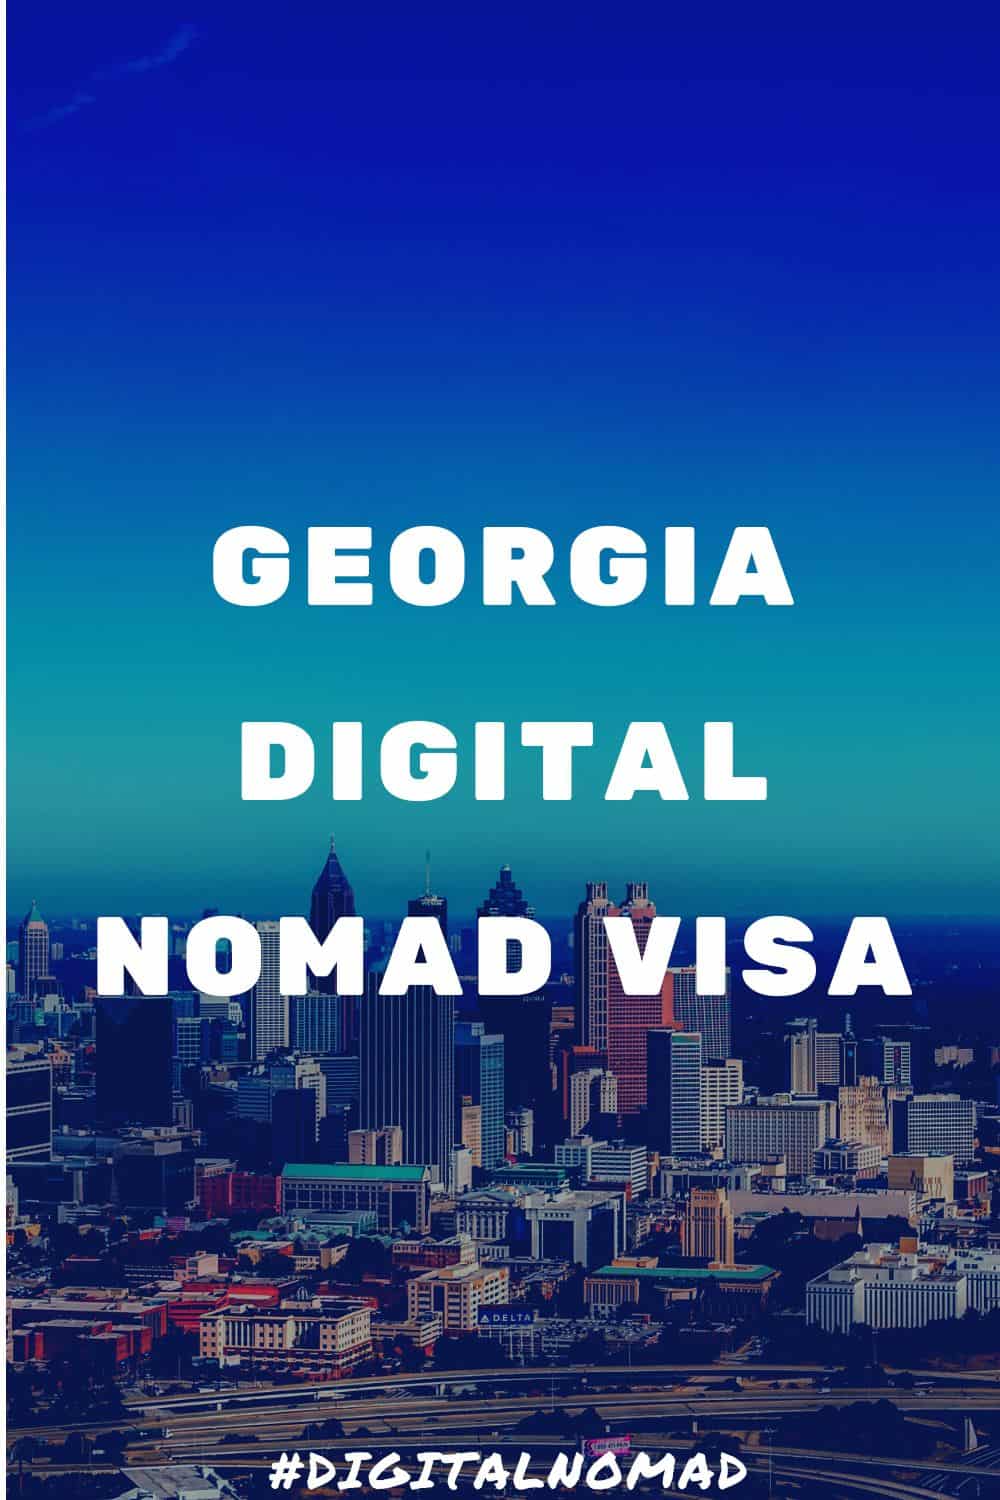 Georgia Digital Nomad Visa